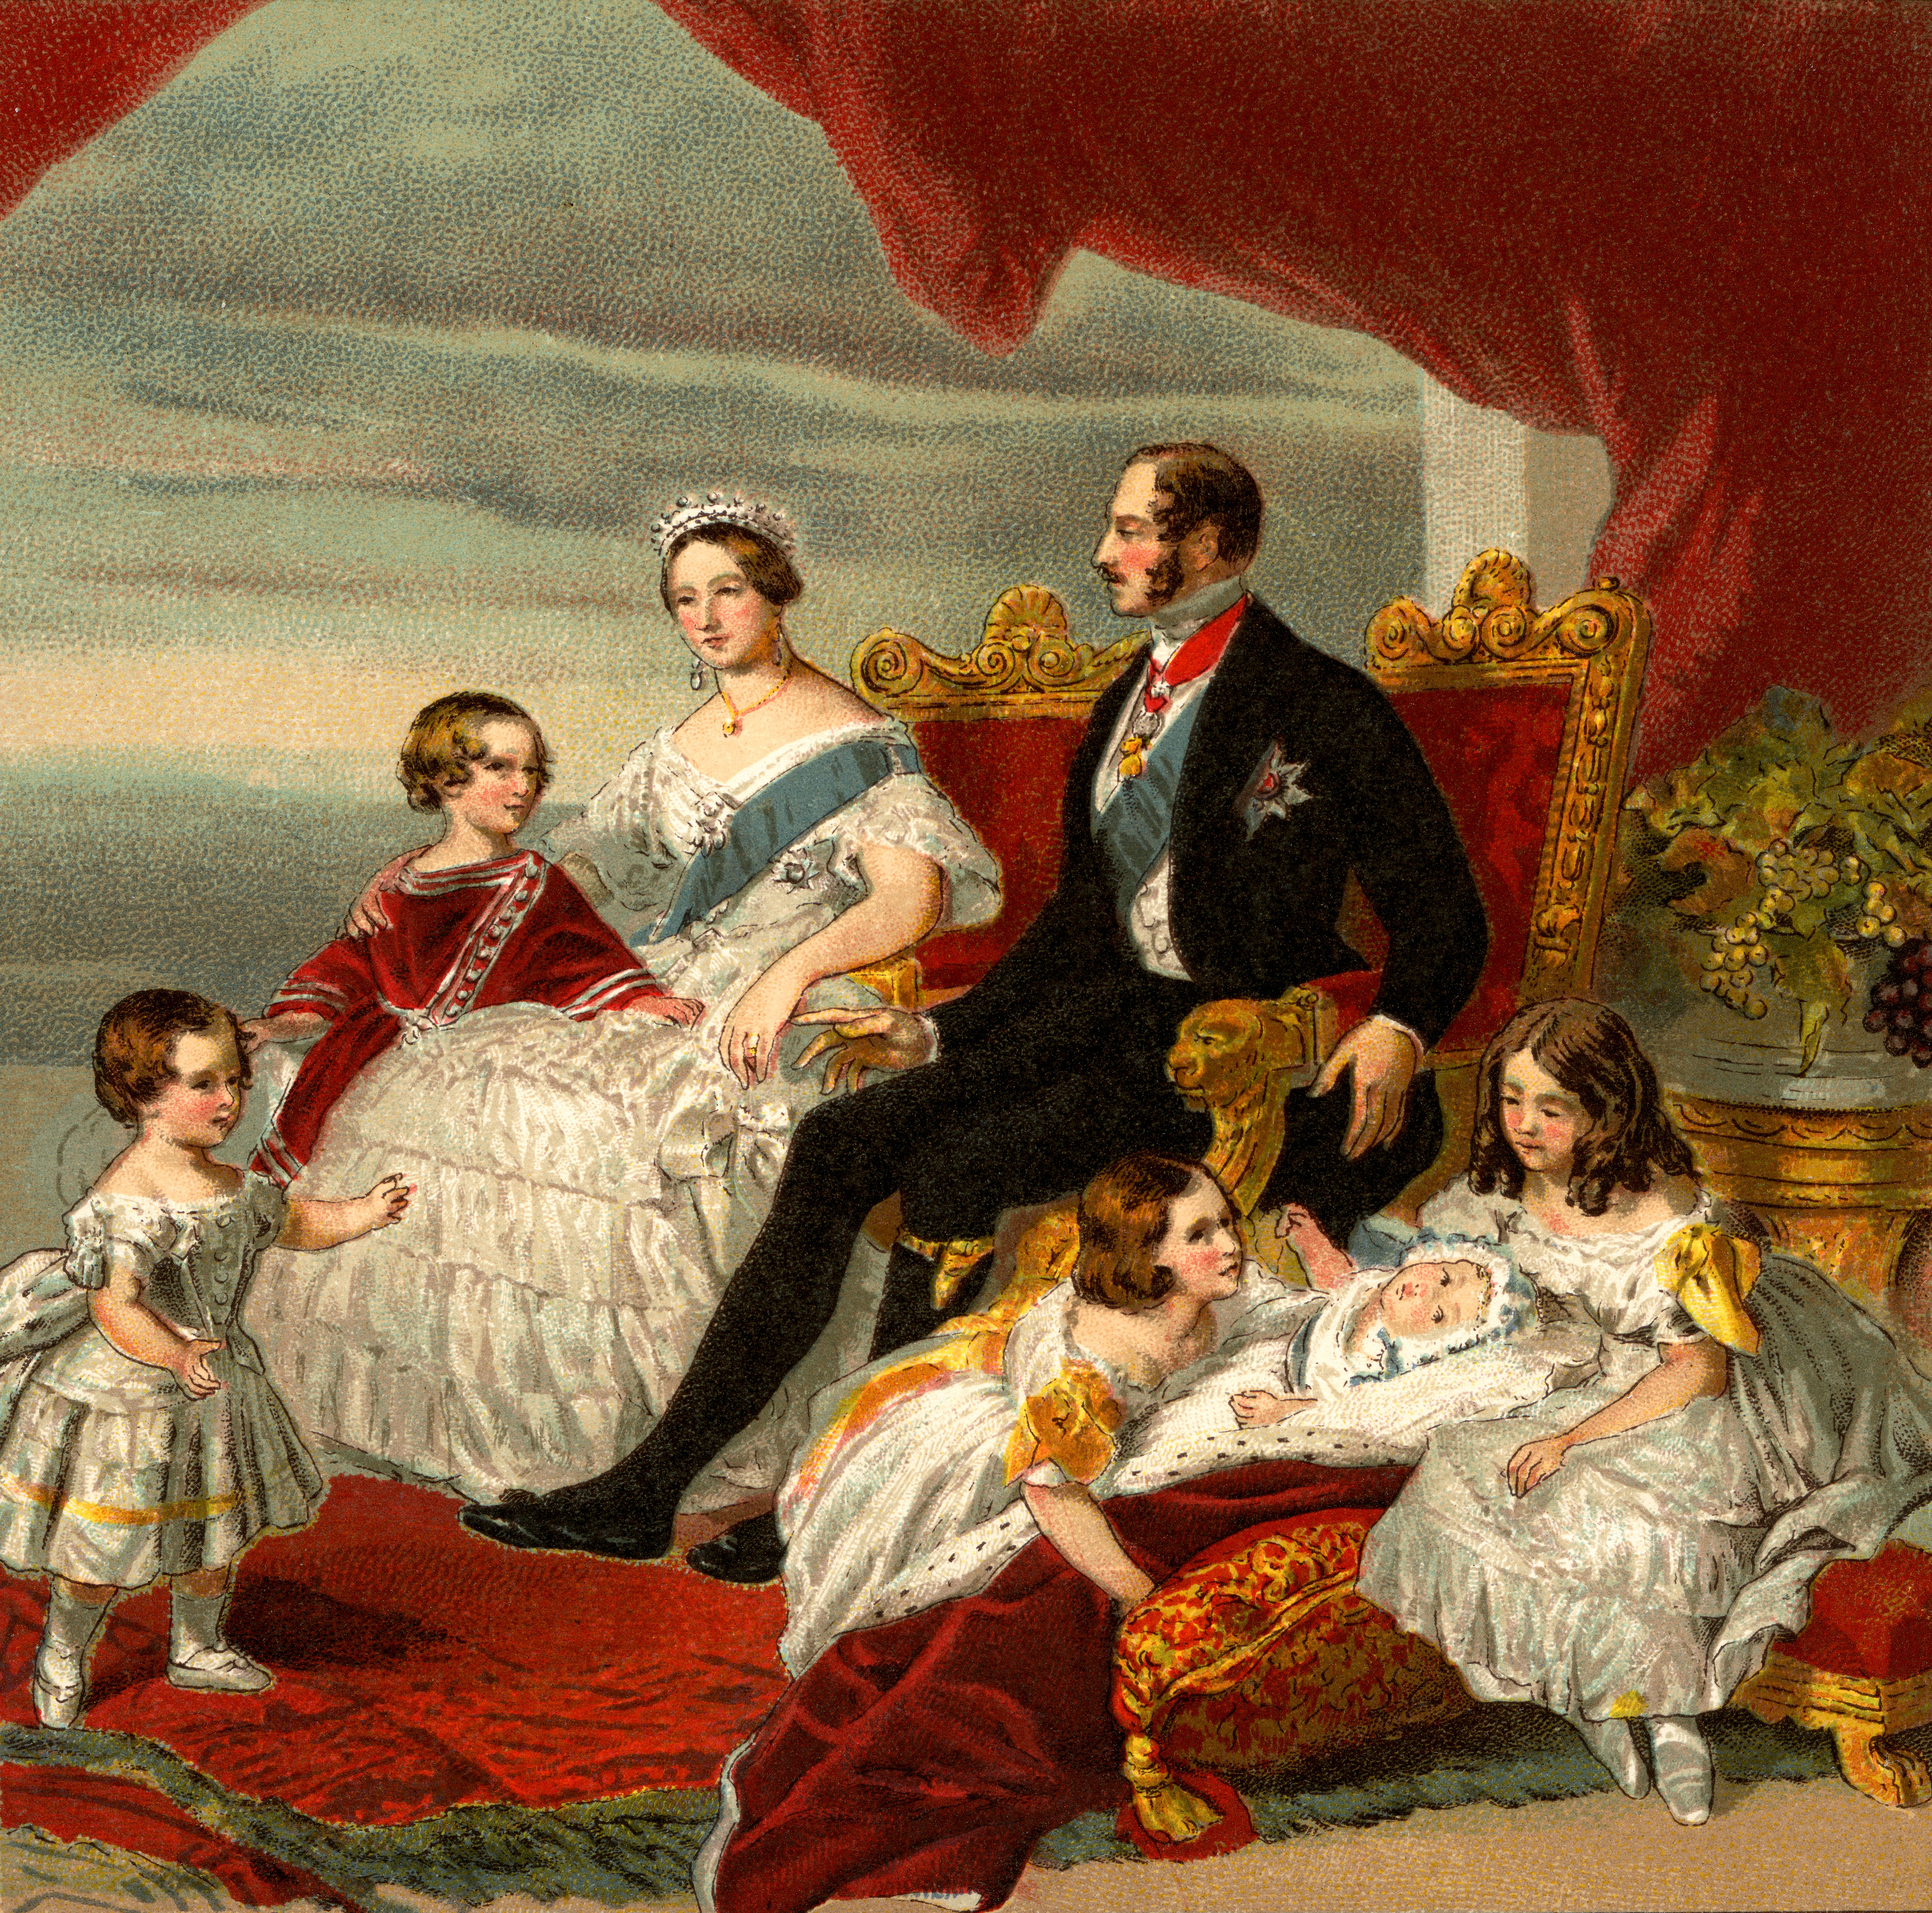 Королева Вікторія та принц Альберт прожили разом понад 20 років - їхня історія кохання